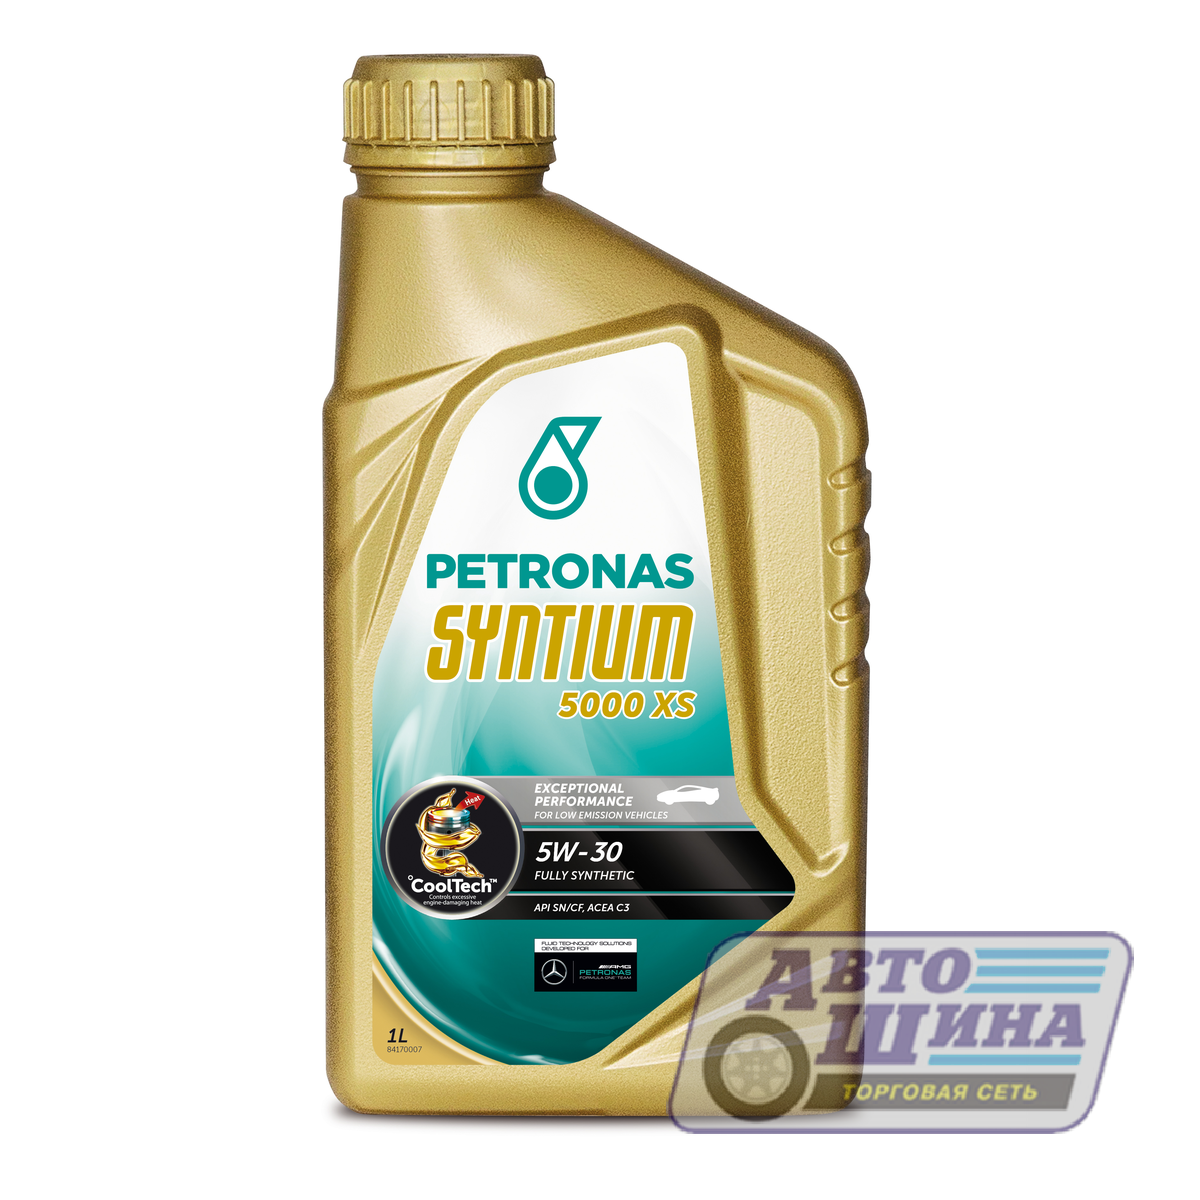 Купить масло моторное 5w-30 Petronas Syntium 5000 XS 1л, Синтетика в .